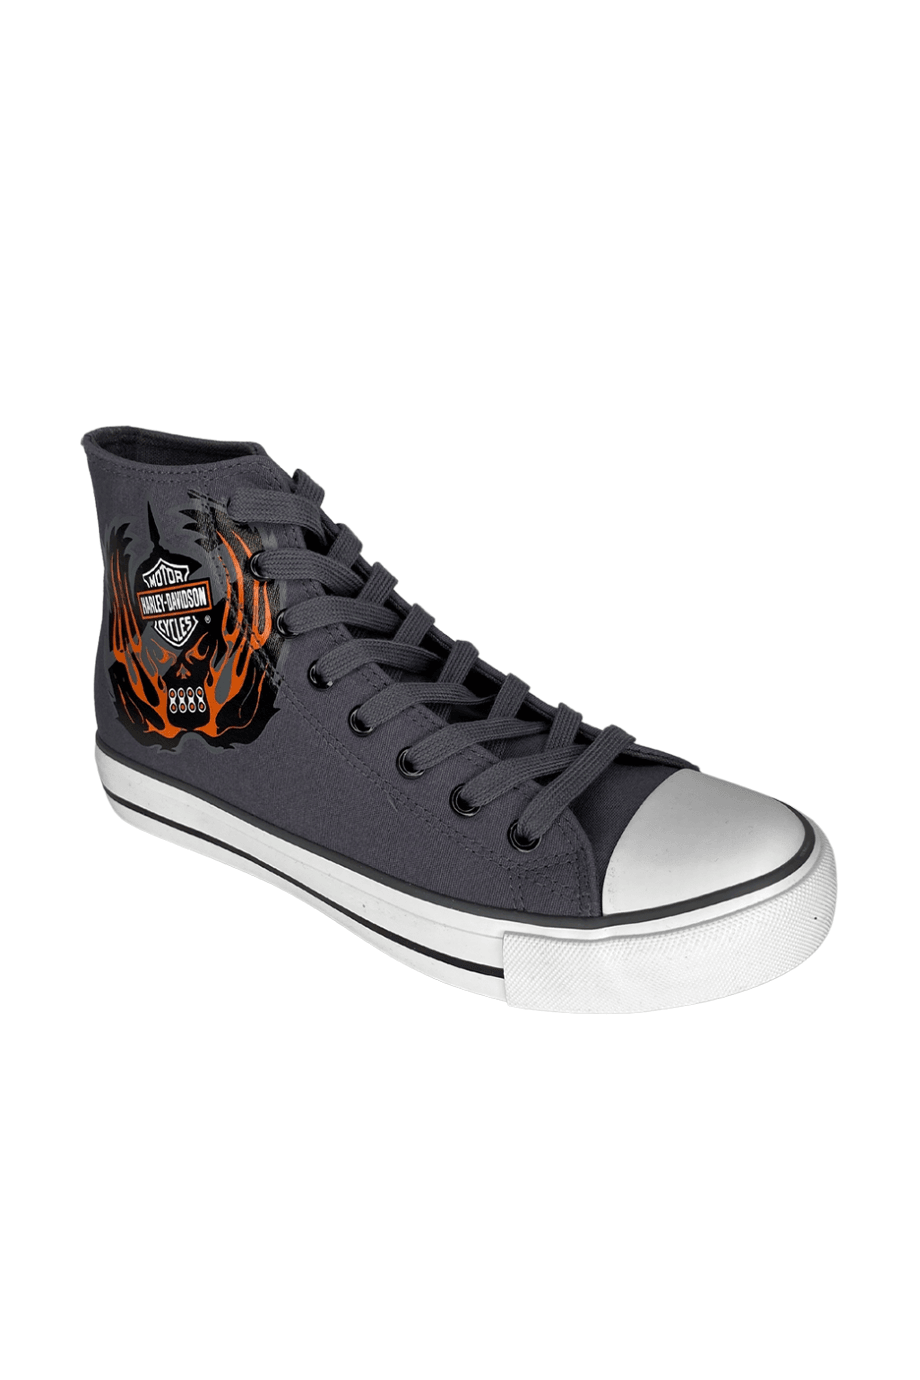 Harley-Davidson® Plano Grey Tekstil Erkek Sneaker